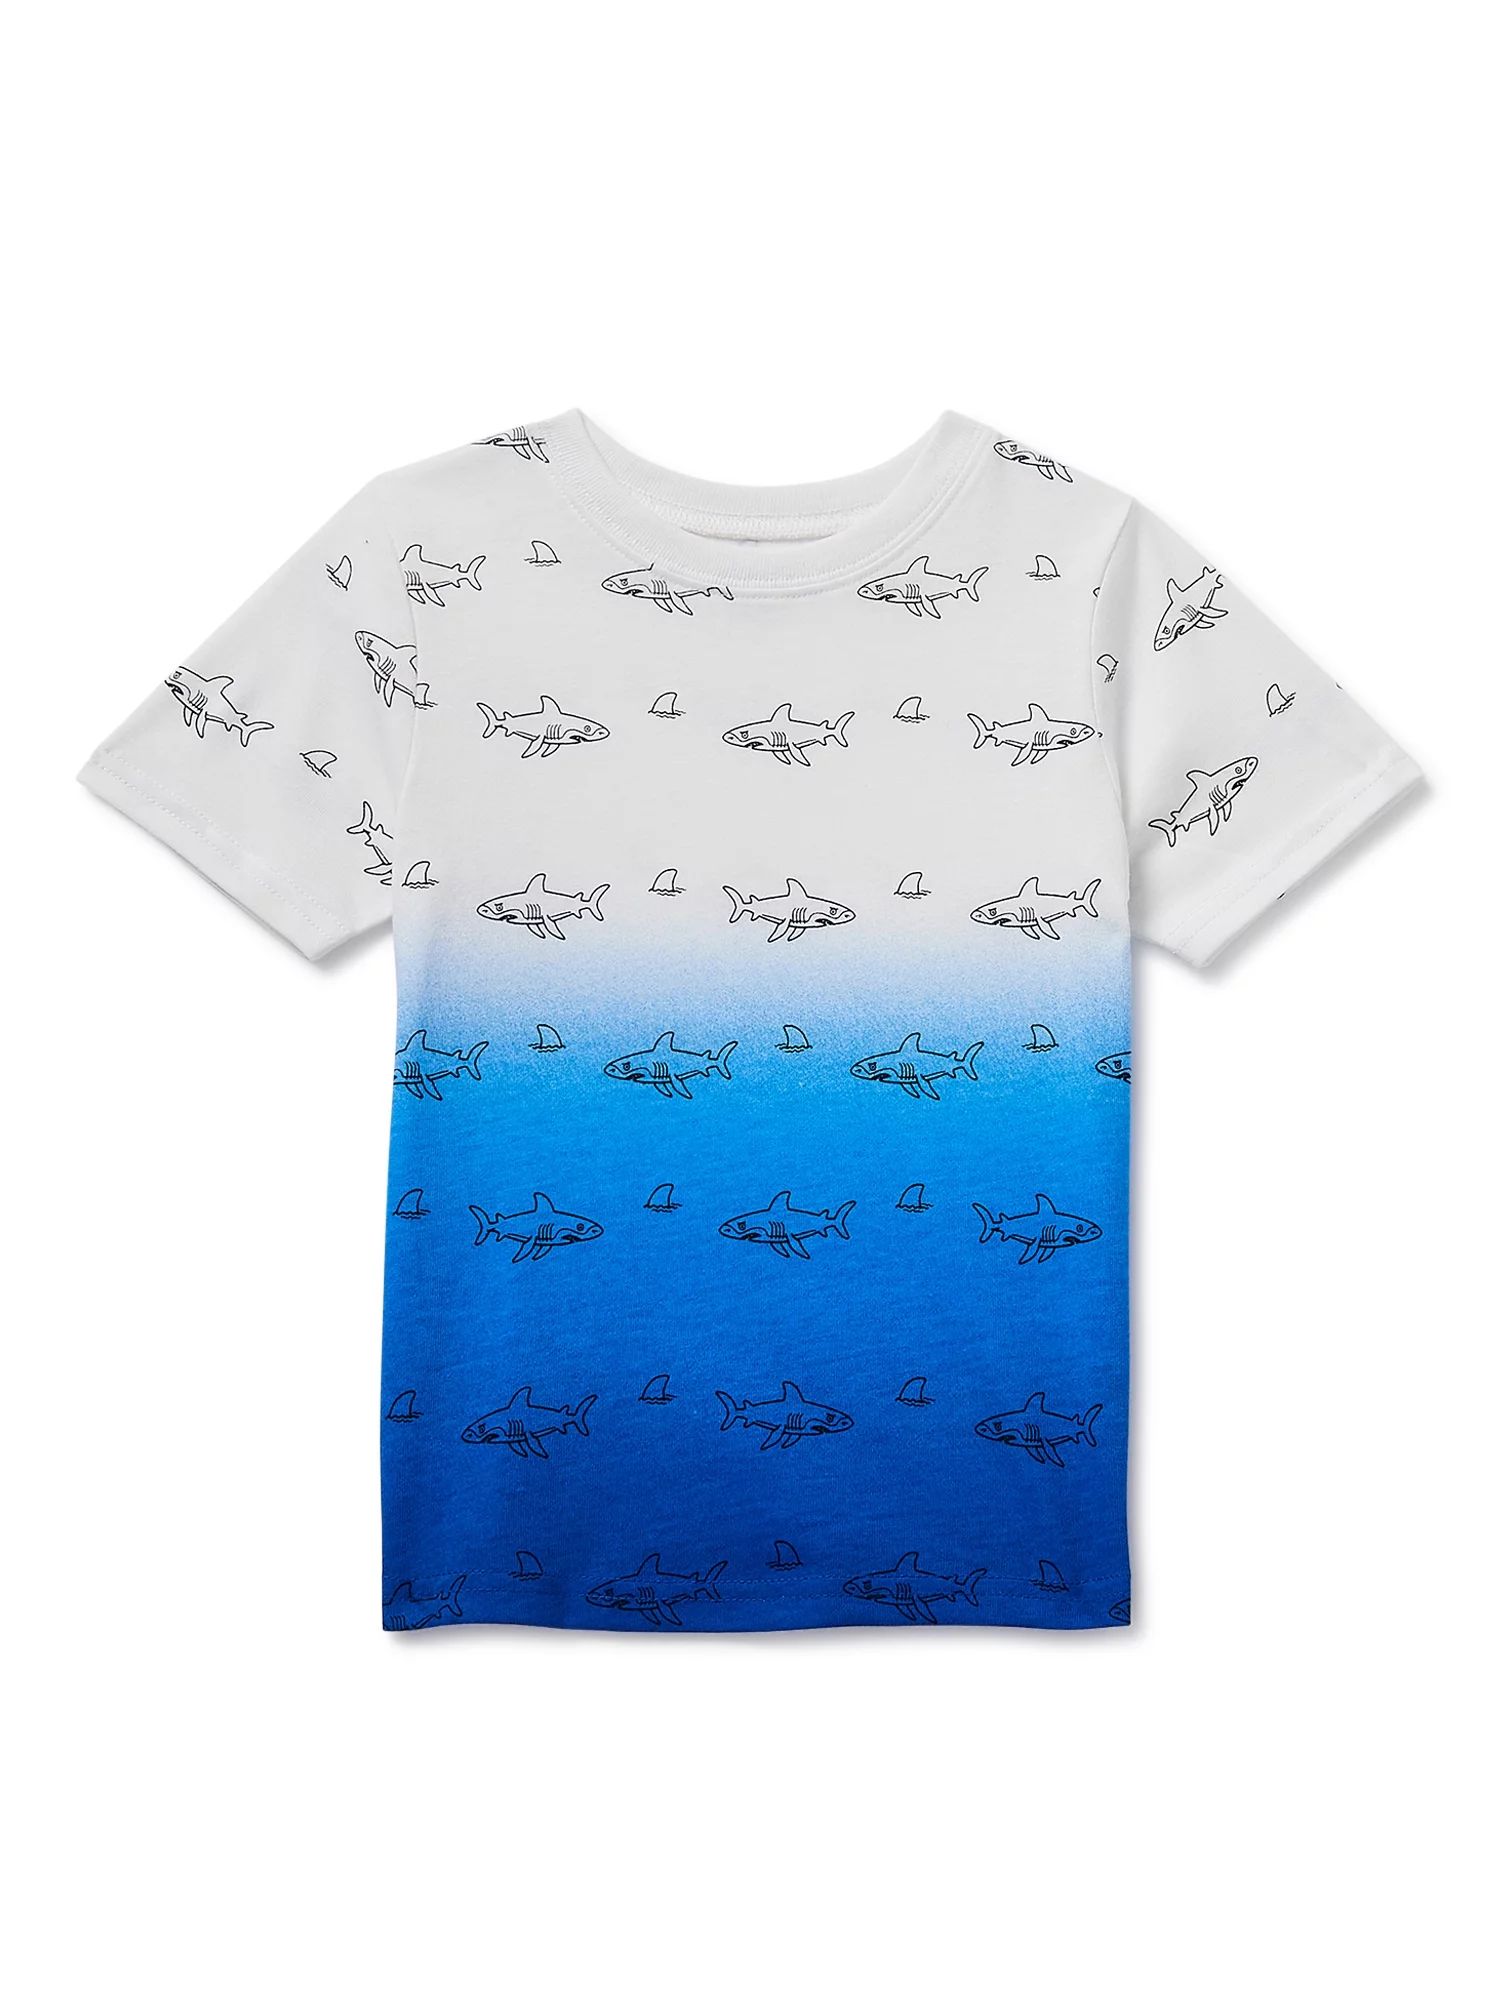 Garanimals Toddler Boy Shark Print Short-Sleeve Dip Dye T-Shirt (12M-5T) | Walmart (US)